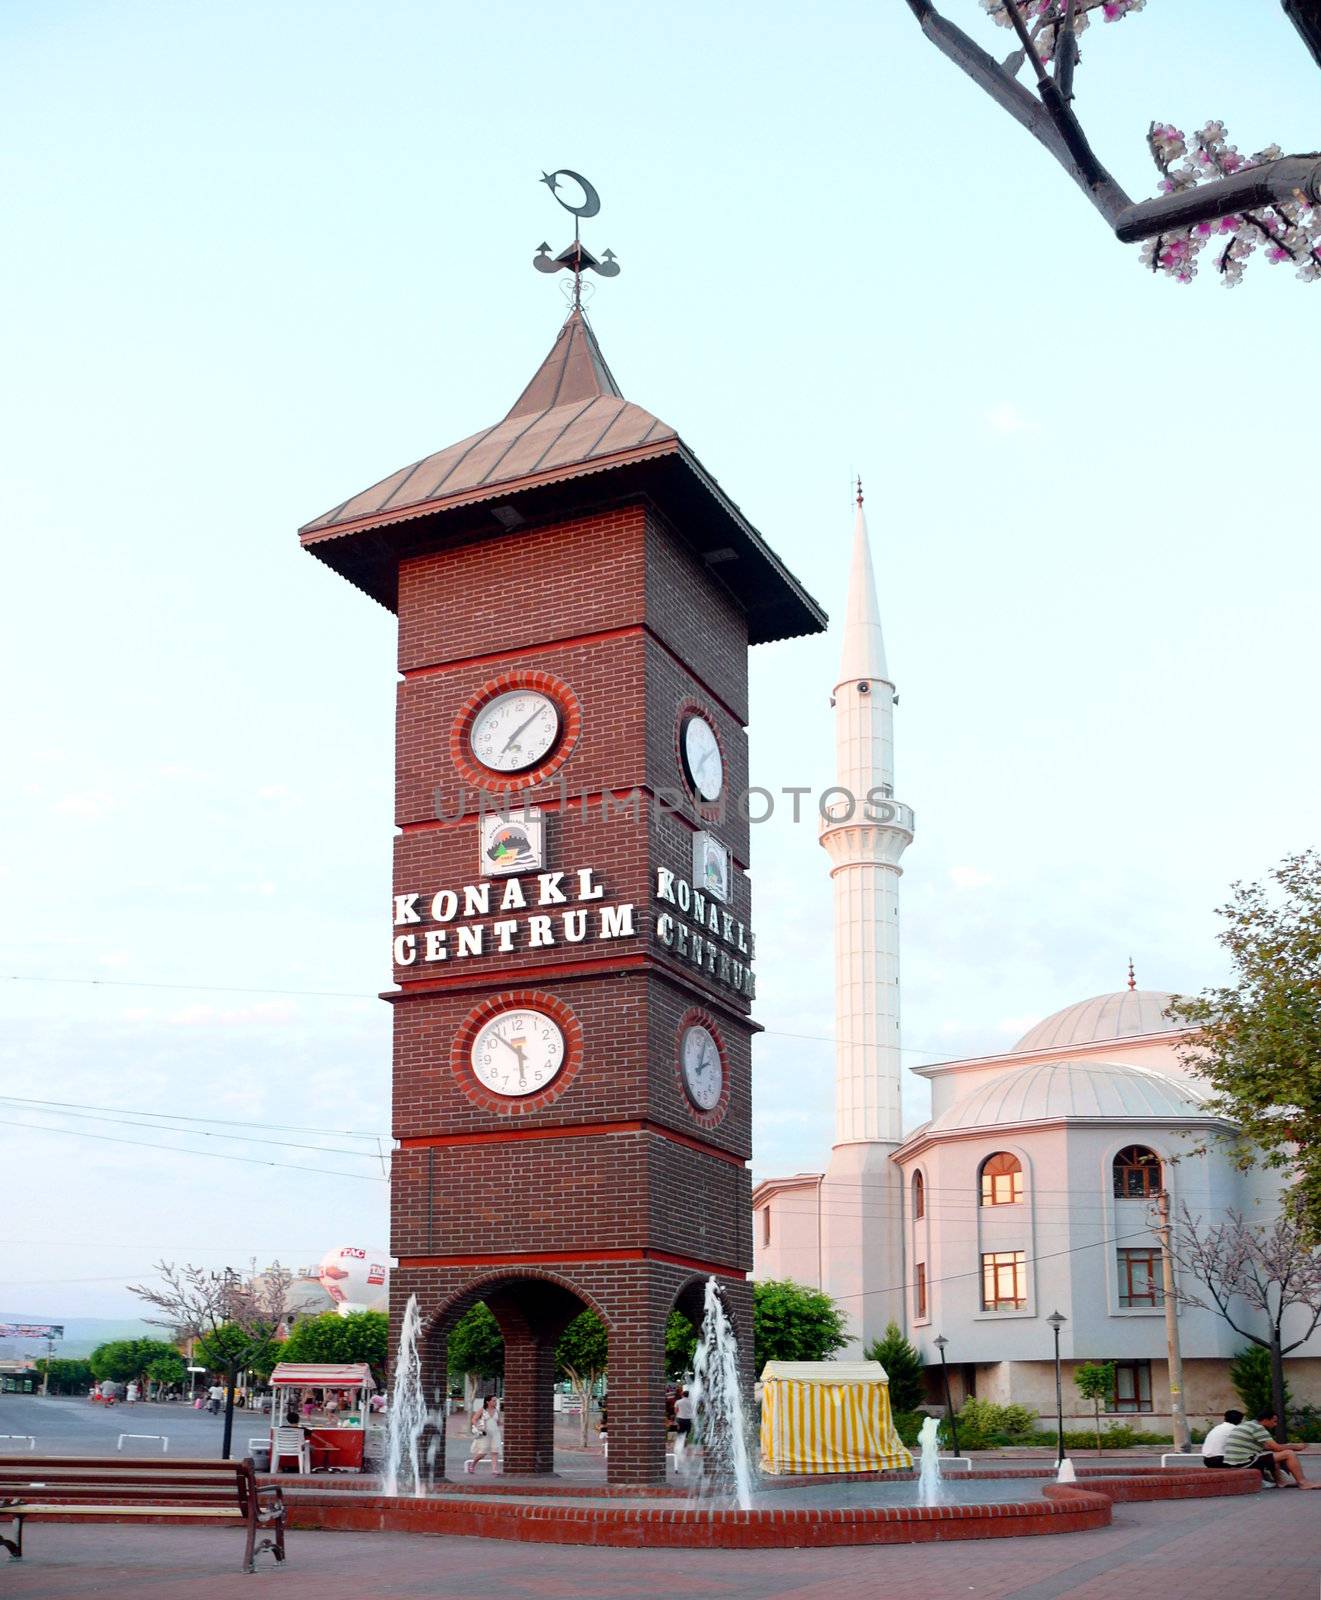 Tower with clock - Konakli, Turkey